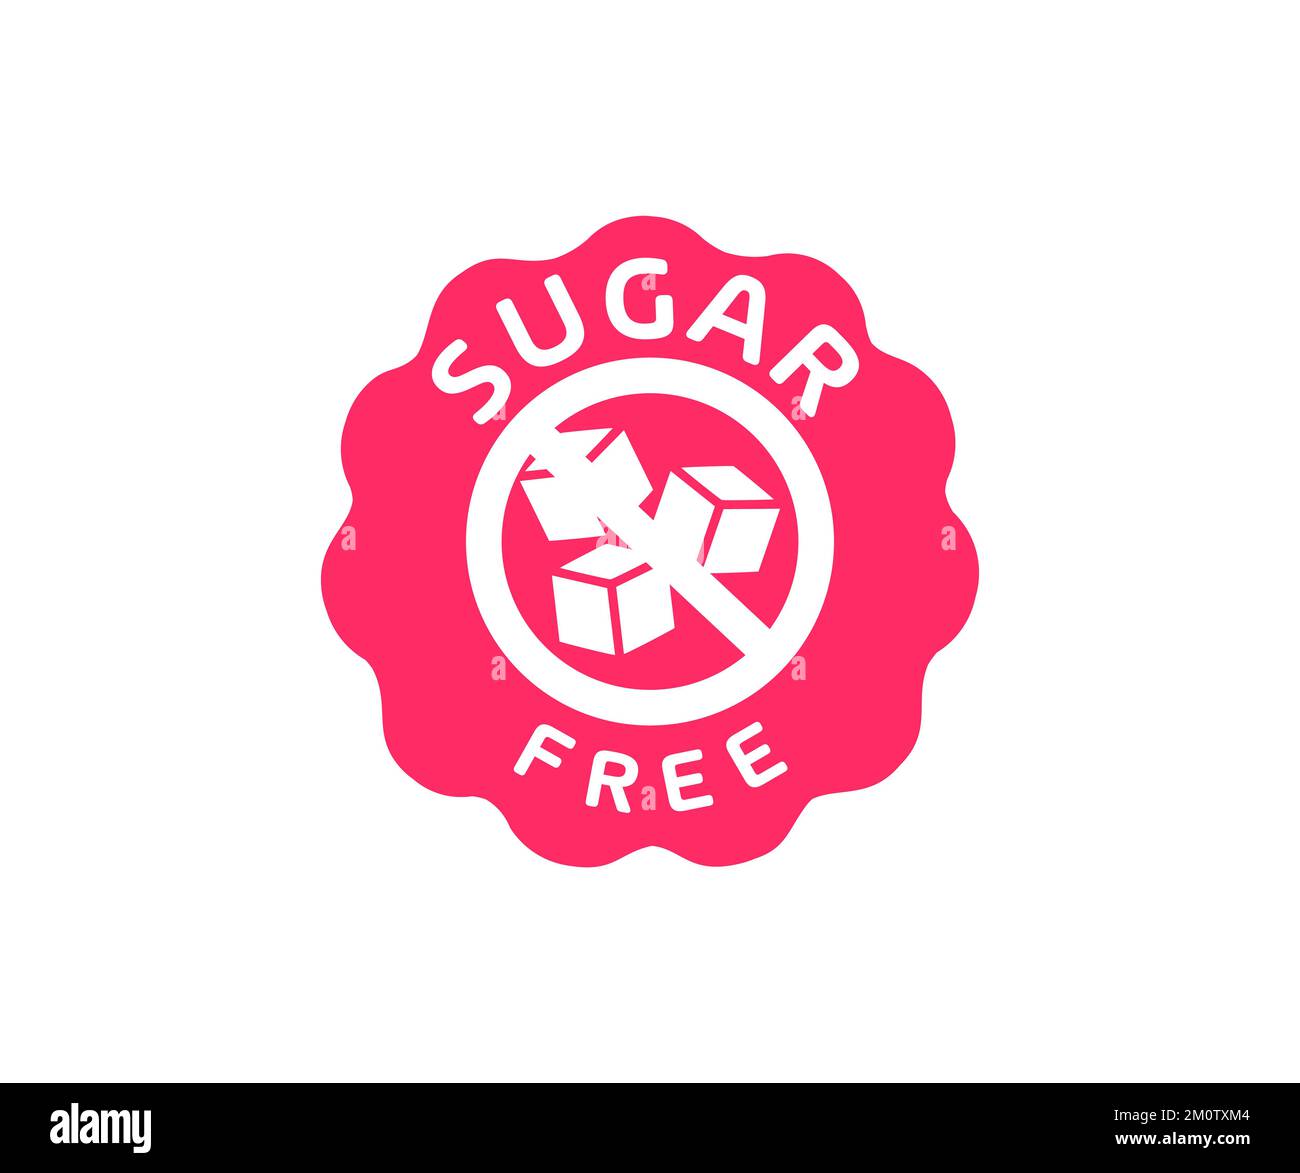 Zuckerfreier Stempel, Etikett oder Aufkleber, Schild, Logo-Design. Kein Erzeugnis mit Zuckerzusatz. Diabetes-Konzept. Ungesunde Ernährung, Fettleibigkeit, Diabetes, Zahnpflege. Stock Vektor